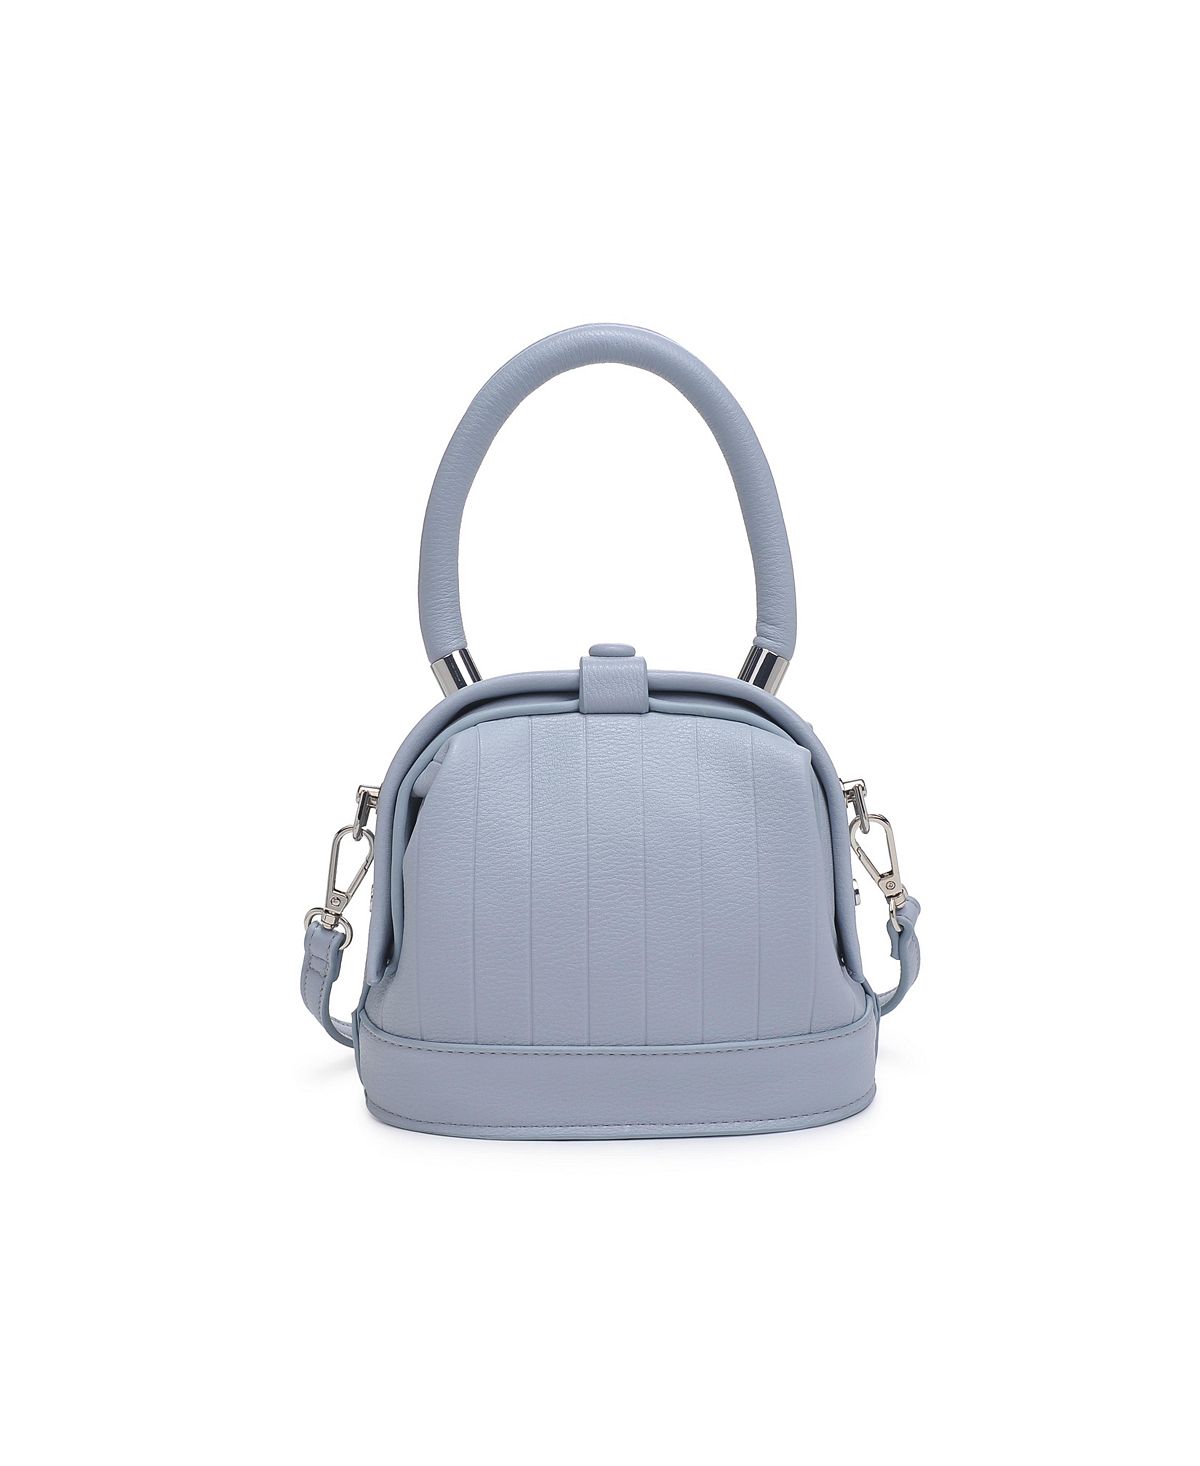 Миниатюрная сумка через плечо Charmain Moda Luxe сумка через плечо moda luxe jules с цветочным принтом